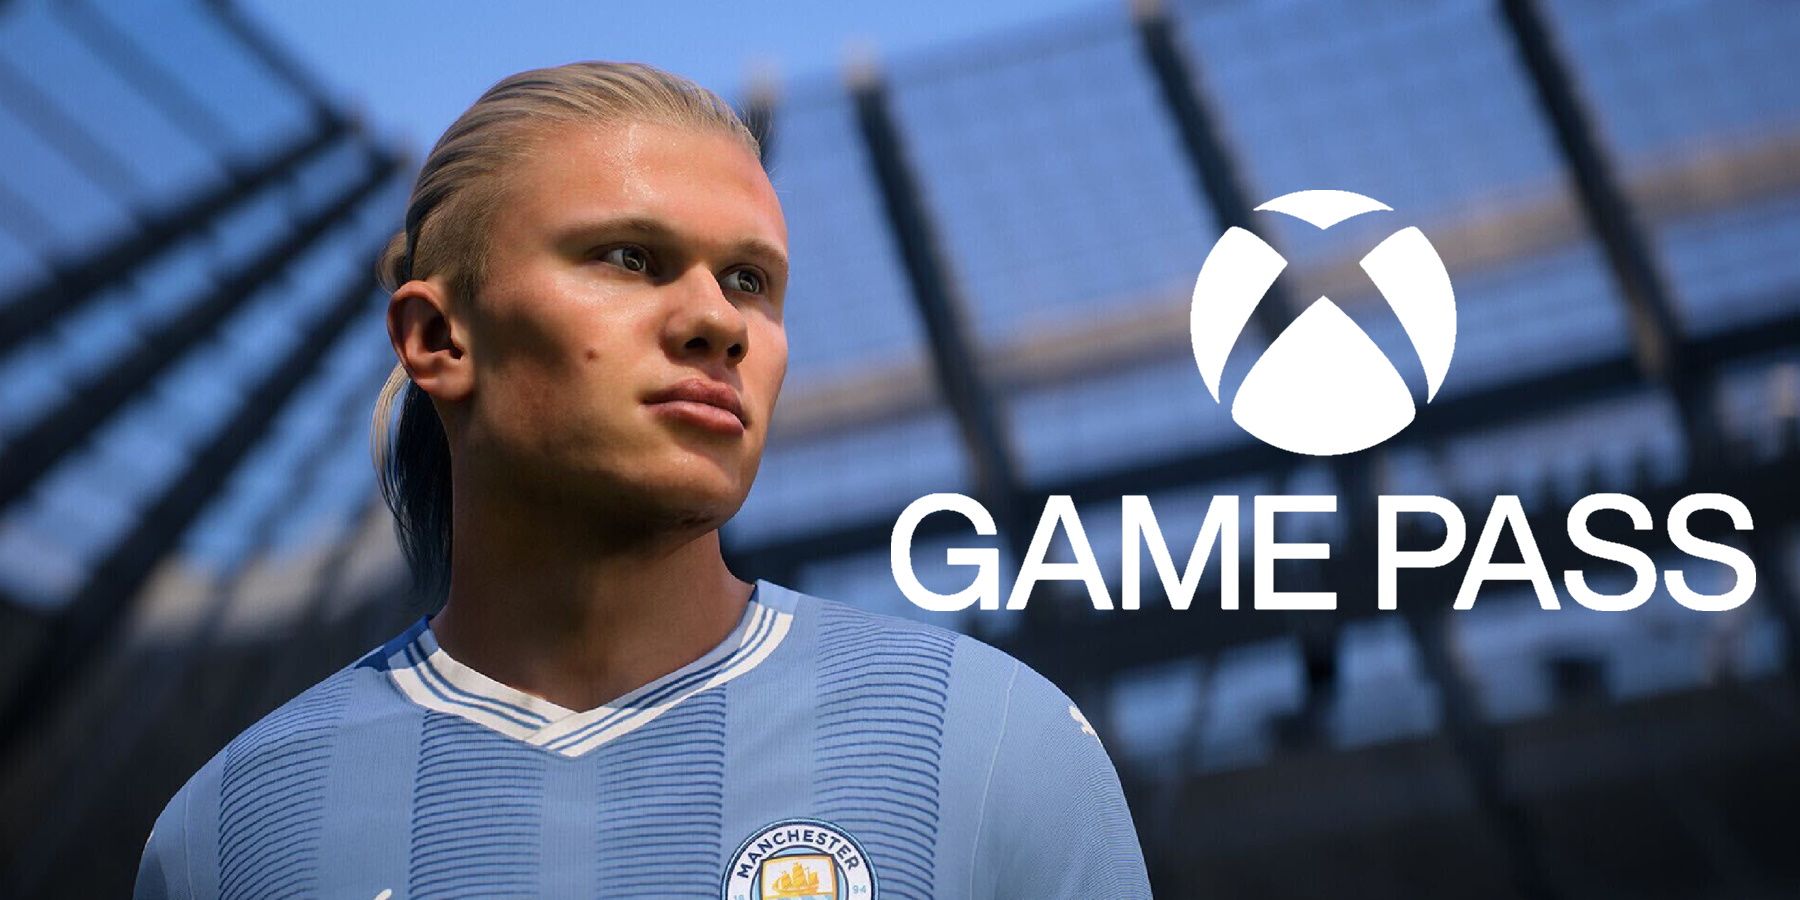 FIFA 22 chega ao EA Play e Xbox Game Pass Ultimate